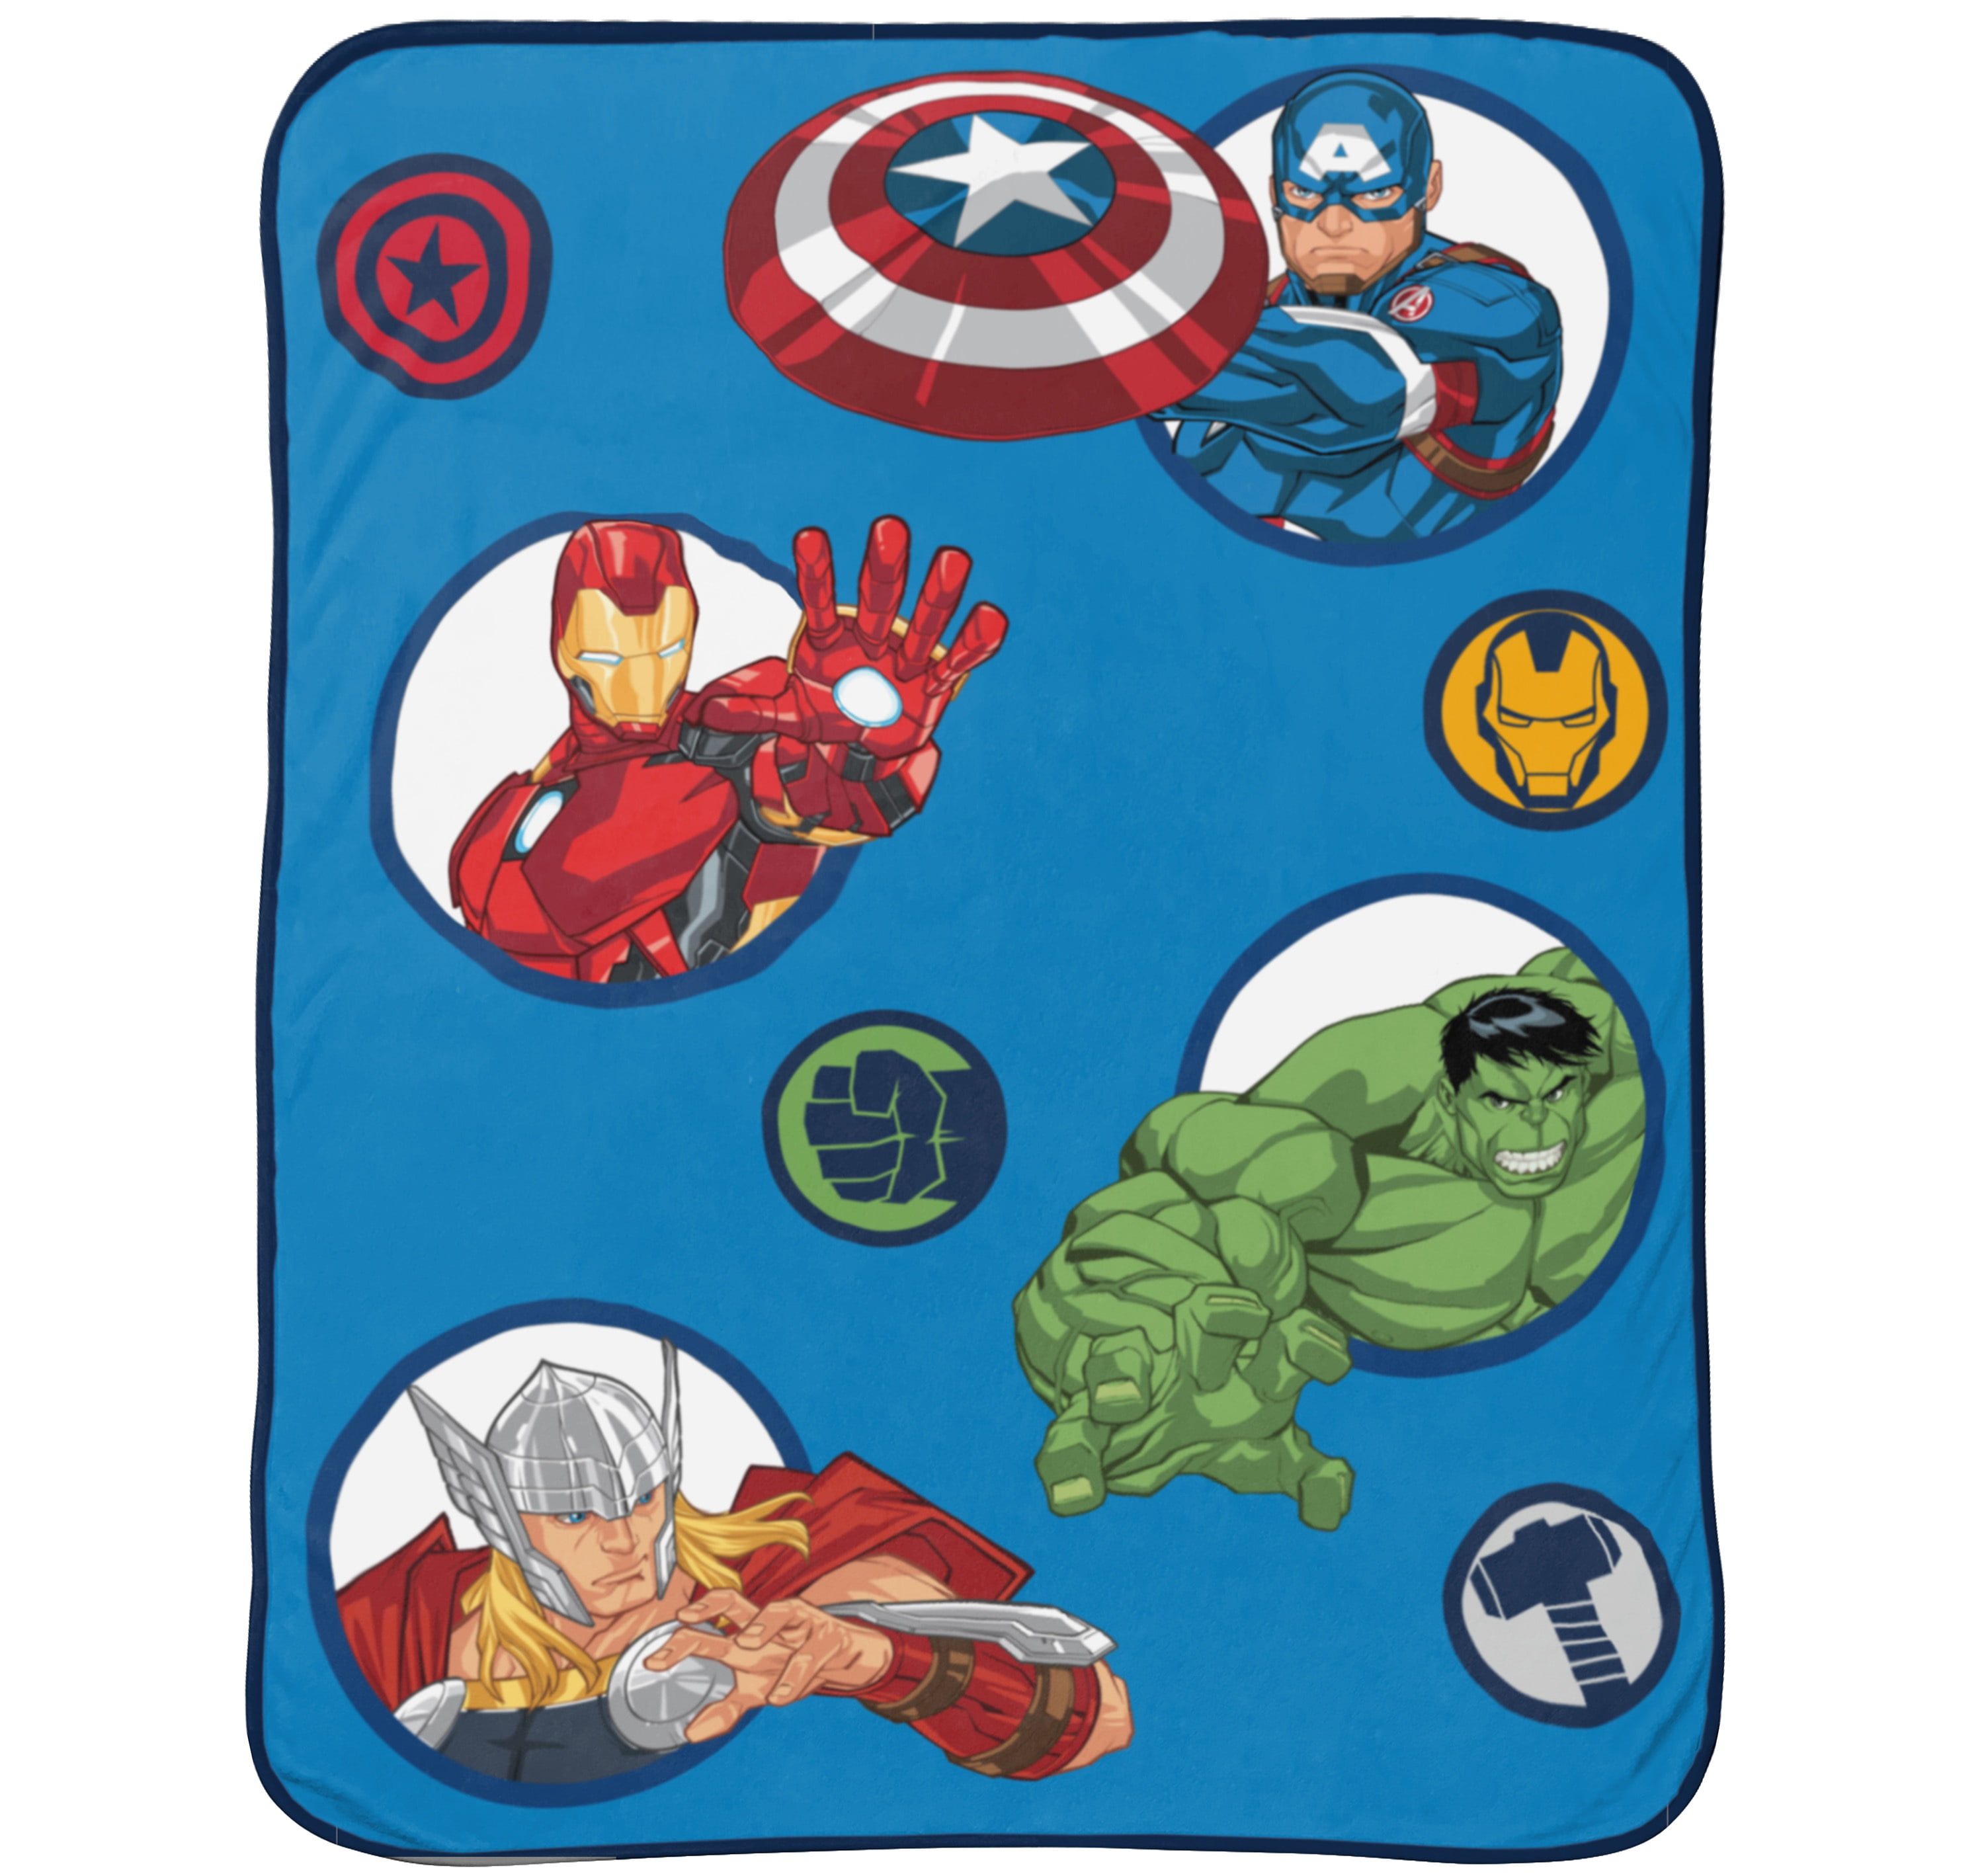 Marvel Avengers Throw Blanket 45" x 60" w/ Captain America Drawstring Sling Bag 